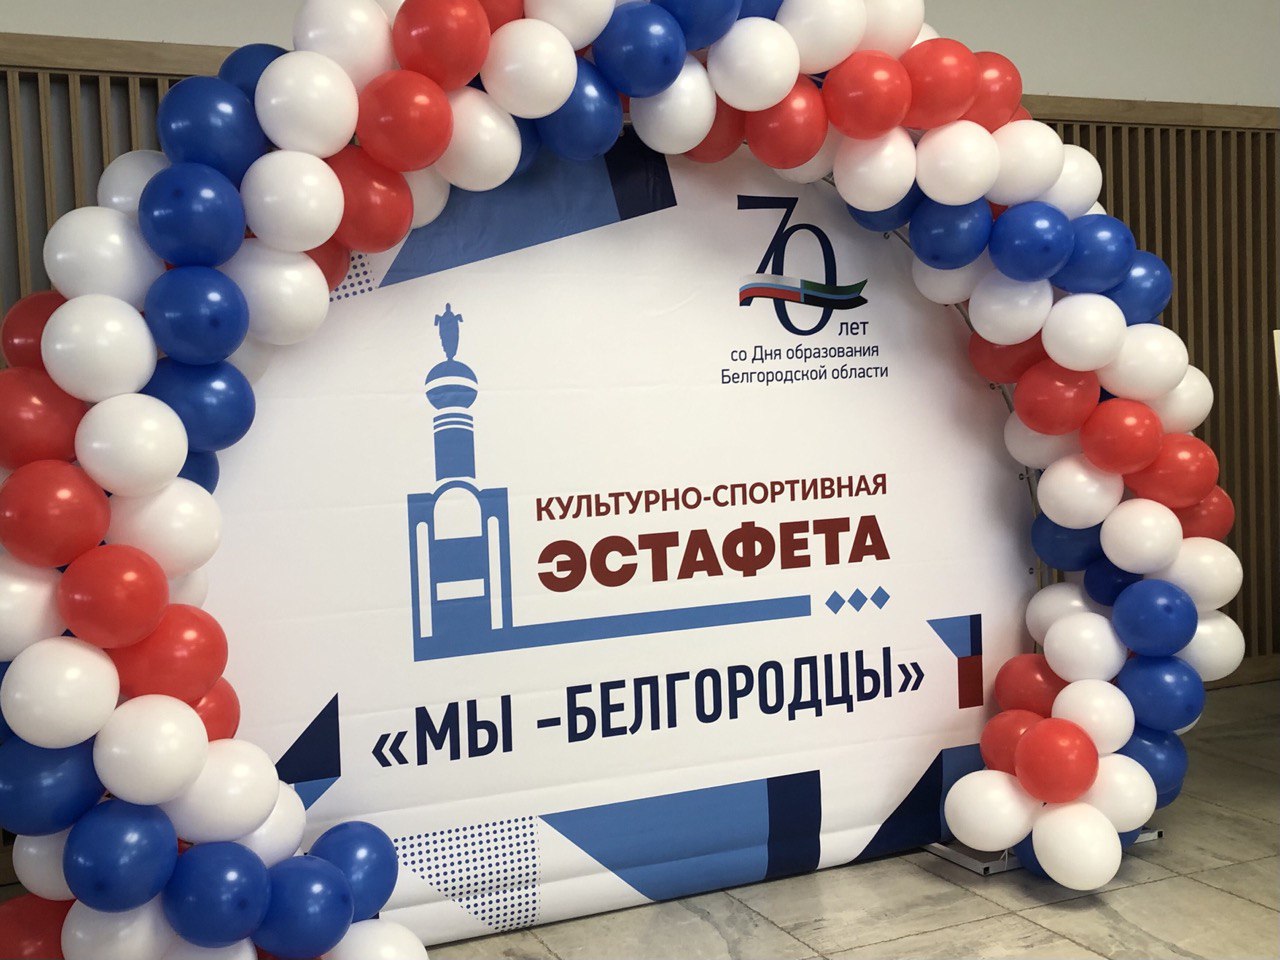 Валуйчане приняли участие в областной  культурно-спортивной эстафете  «Мы – белгородцы».